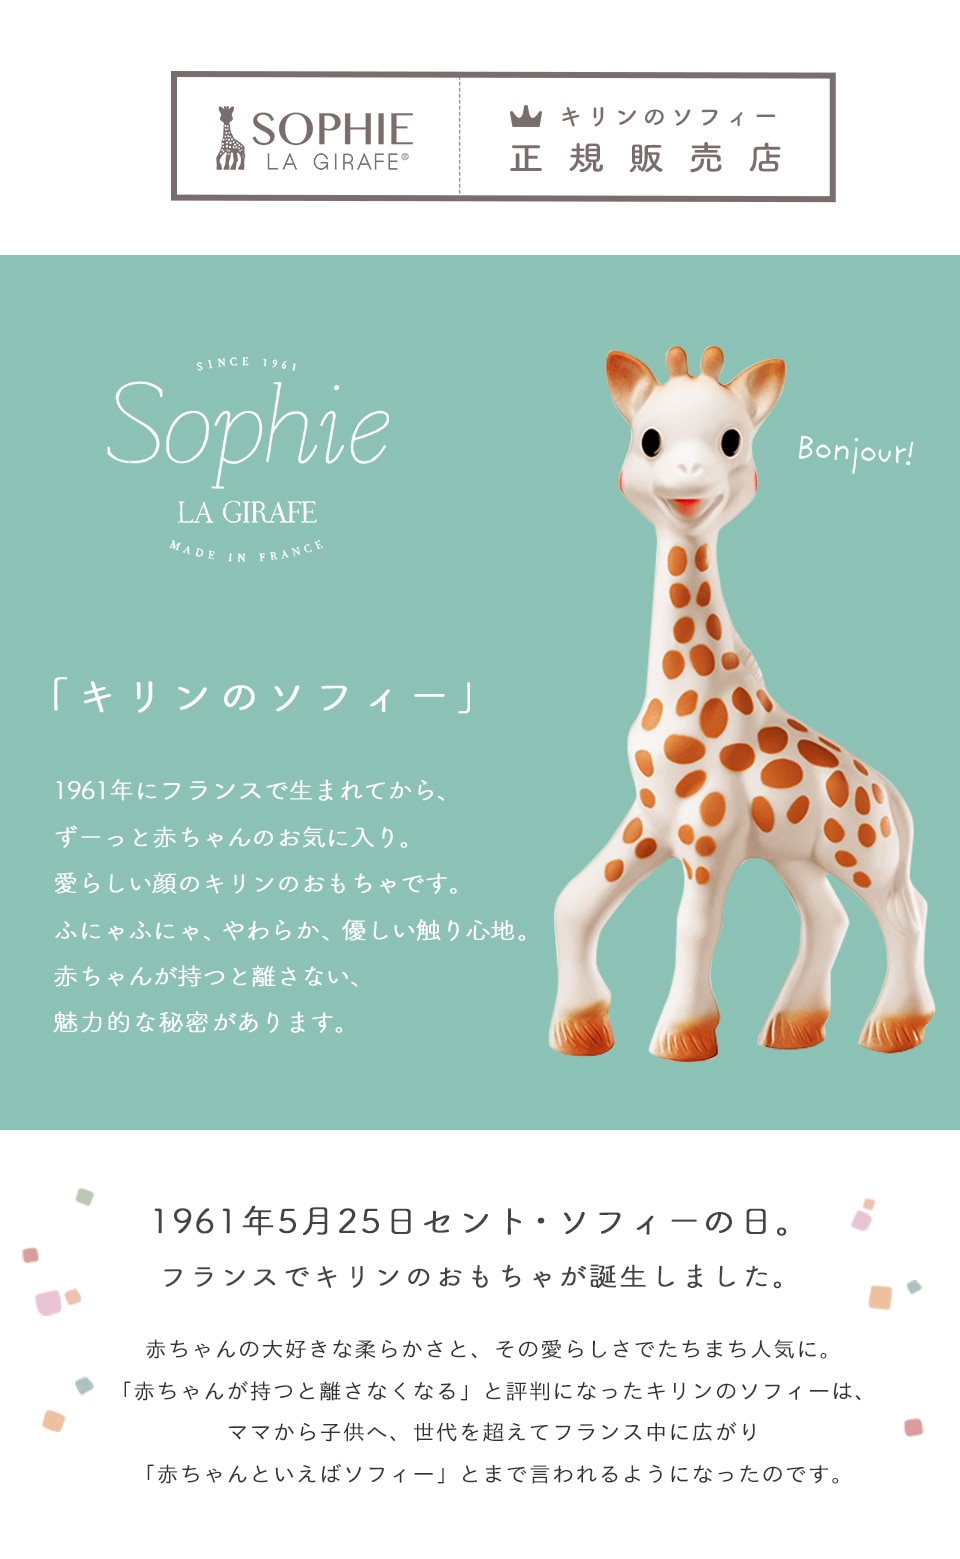 【正規販売店】Sophie la girafe キリンのソフィー (ギフト対象)-ベビーのおみせ ミュッケポッケ 公式ショップ